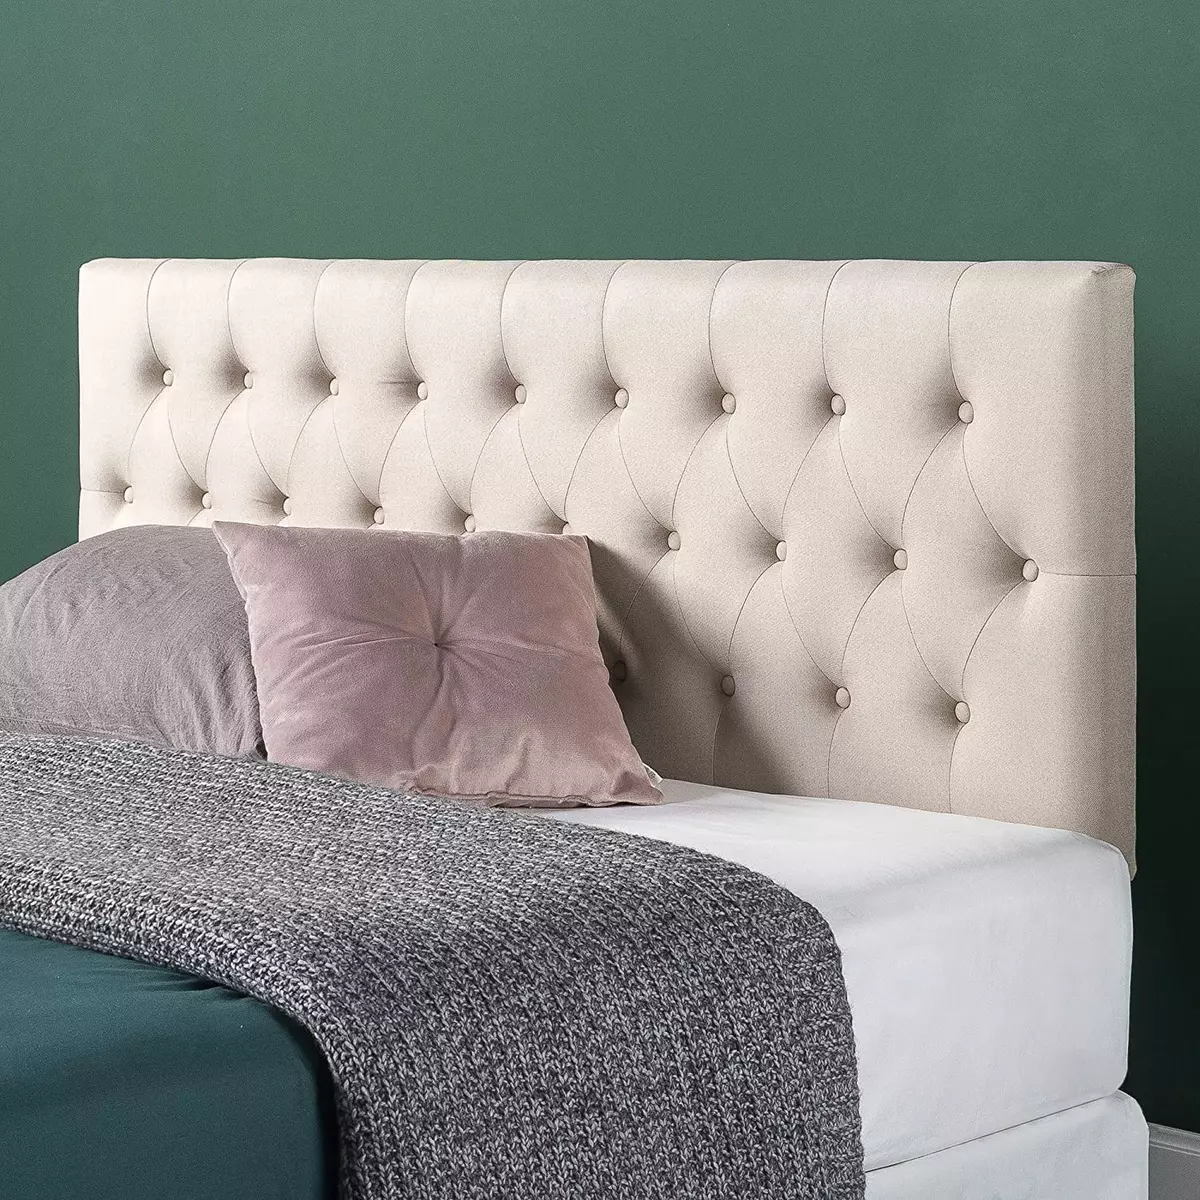 Enseñando Tumor maligno esta respaldo de para cama marco espaldar espaldares cabeceras moderna elegante  queen | eBay